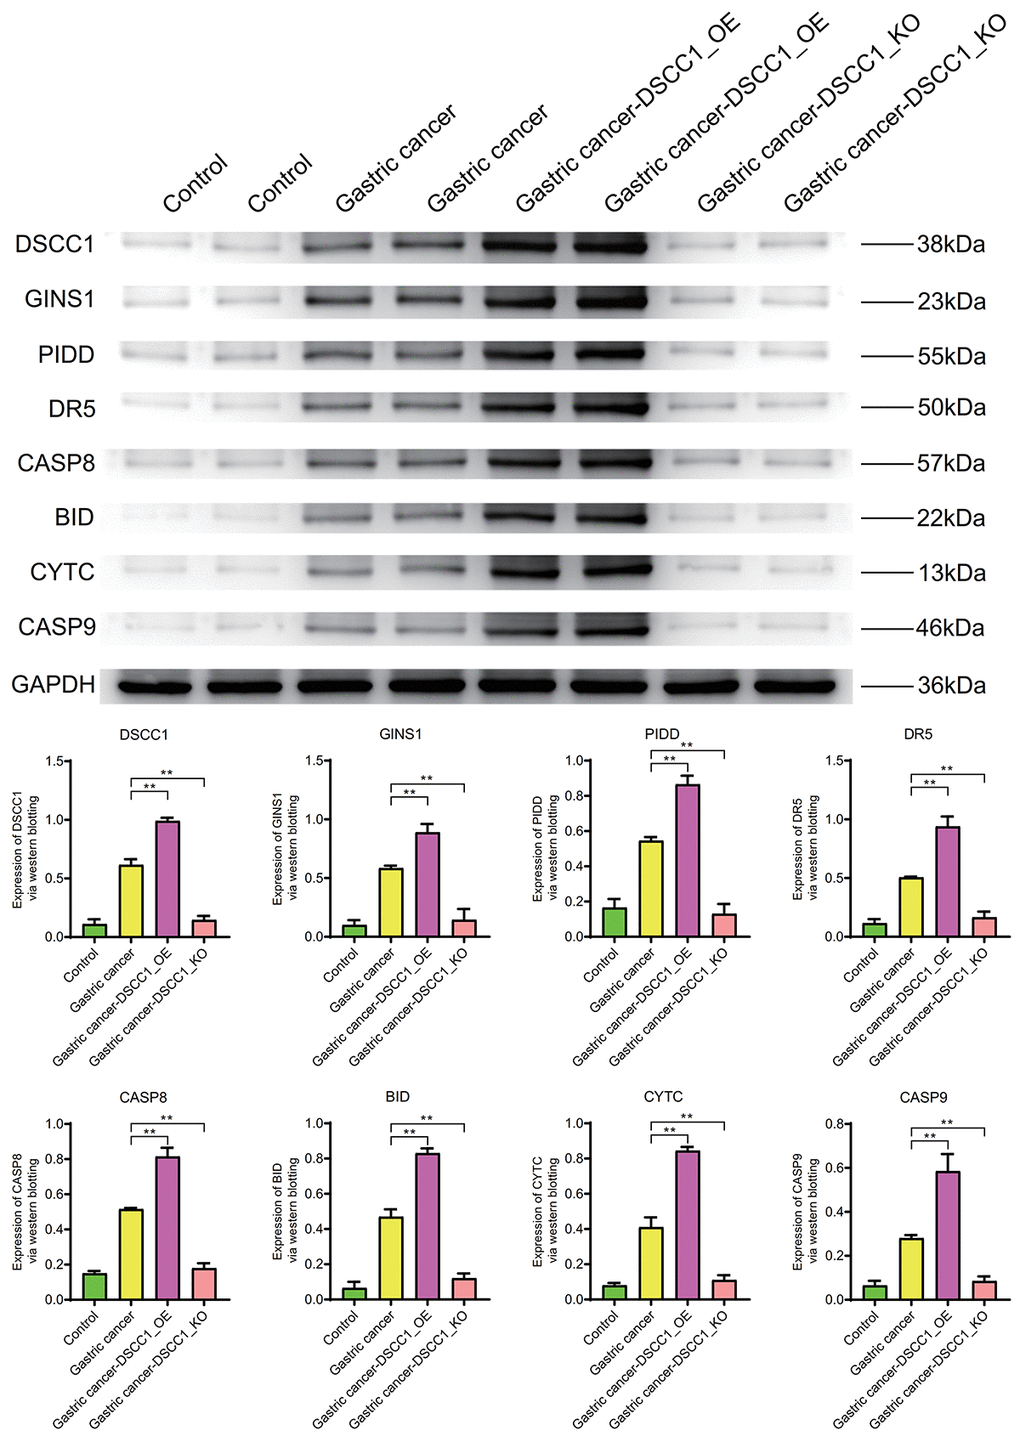 Western blotting. Protein expression levels of DSCC1, GINS1, PIDD, DR5, CASP8, BID, CYTC, CASP9.